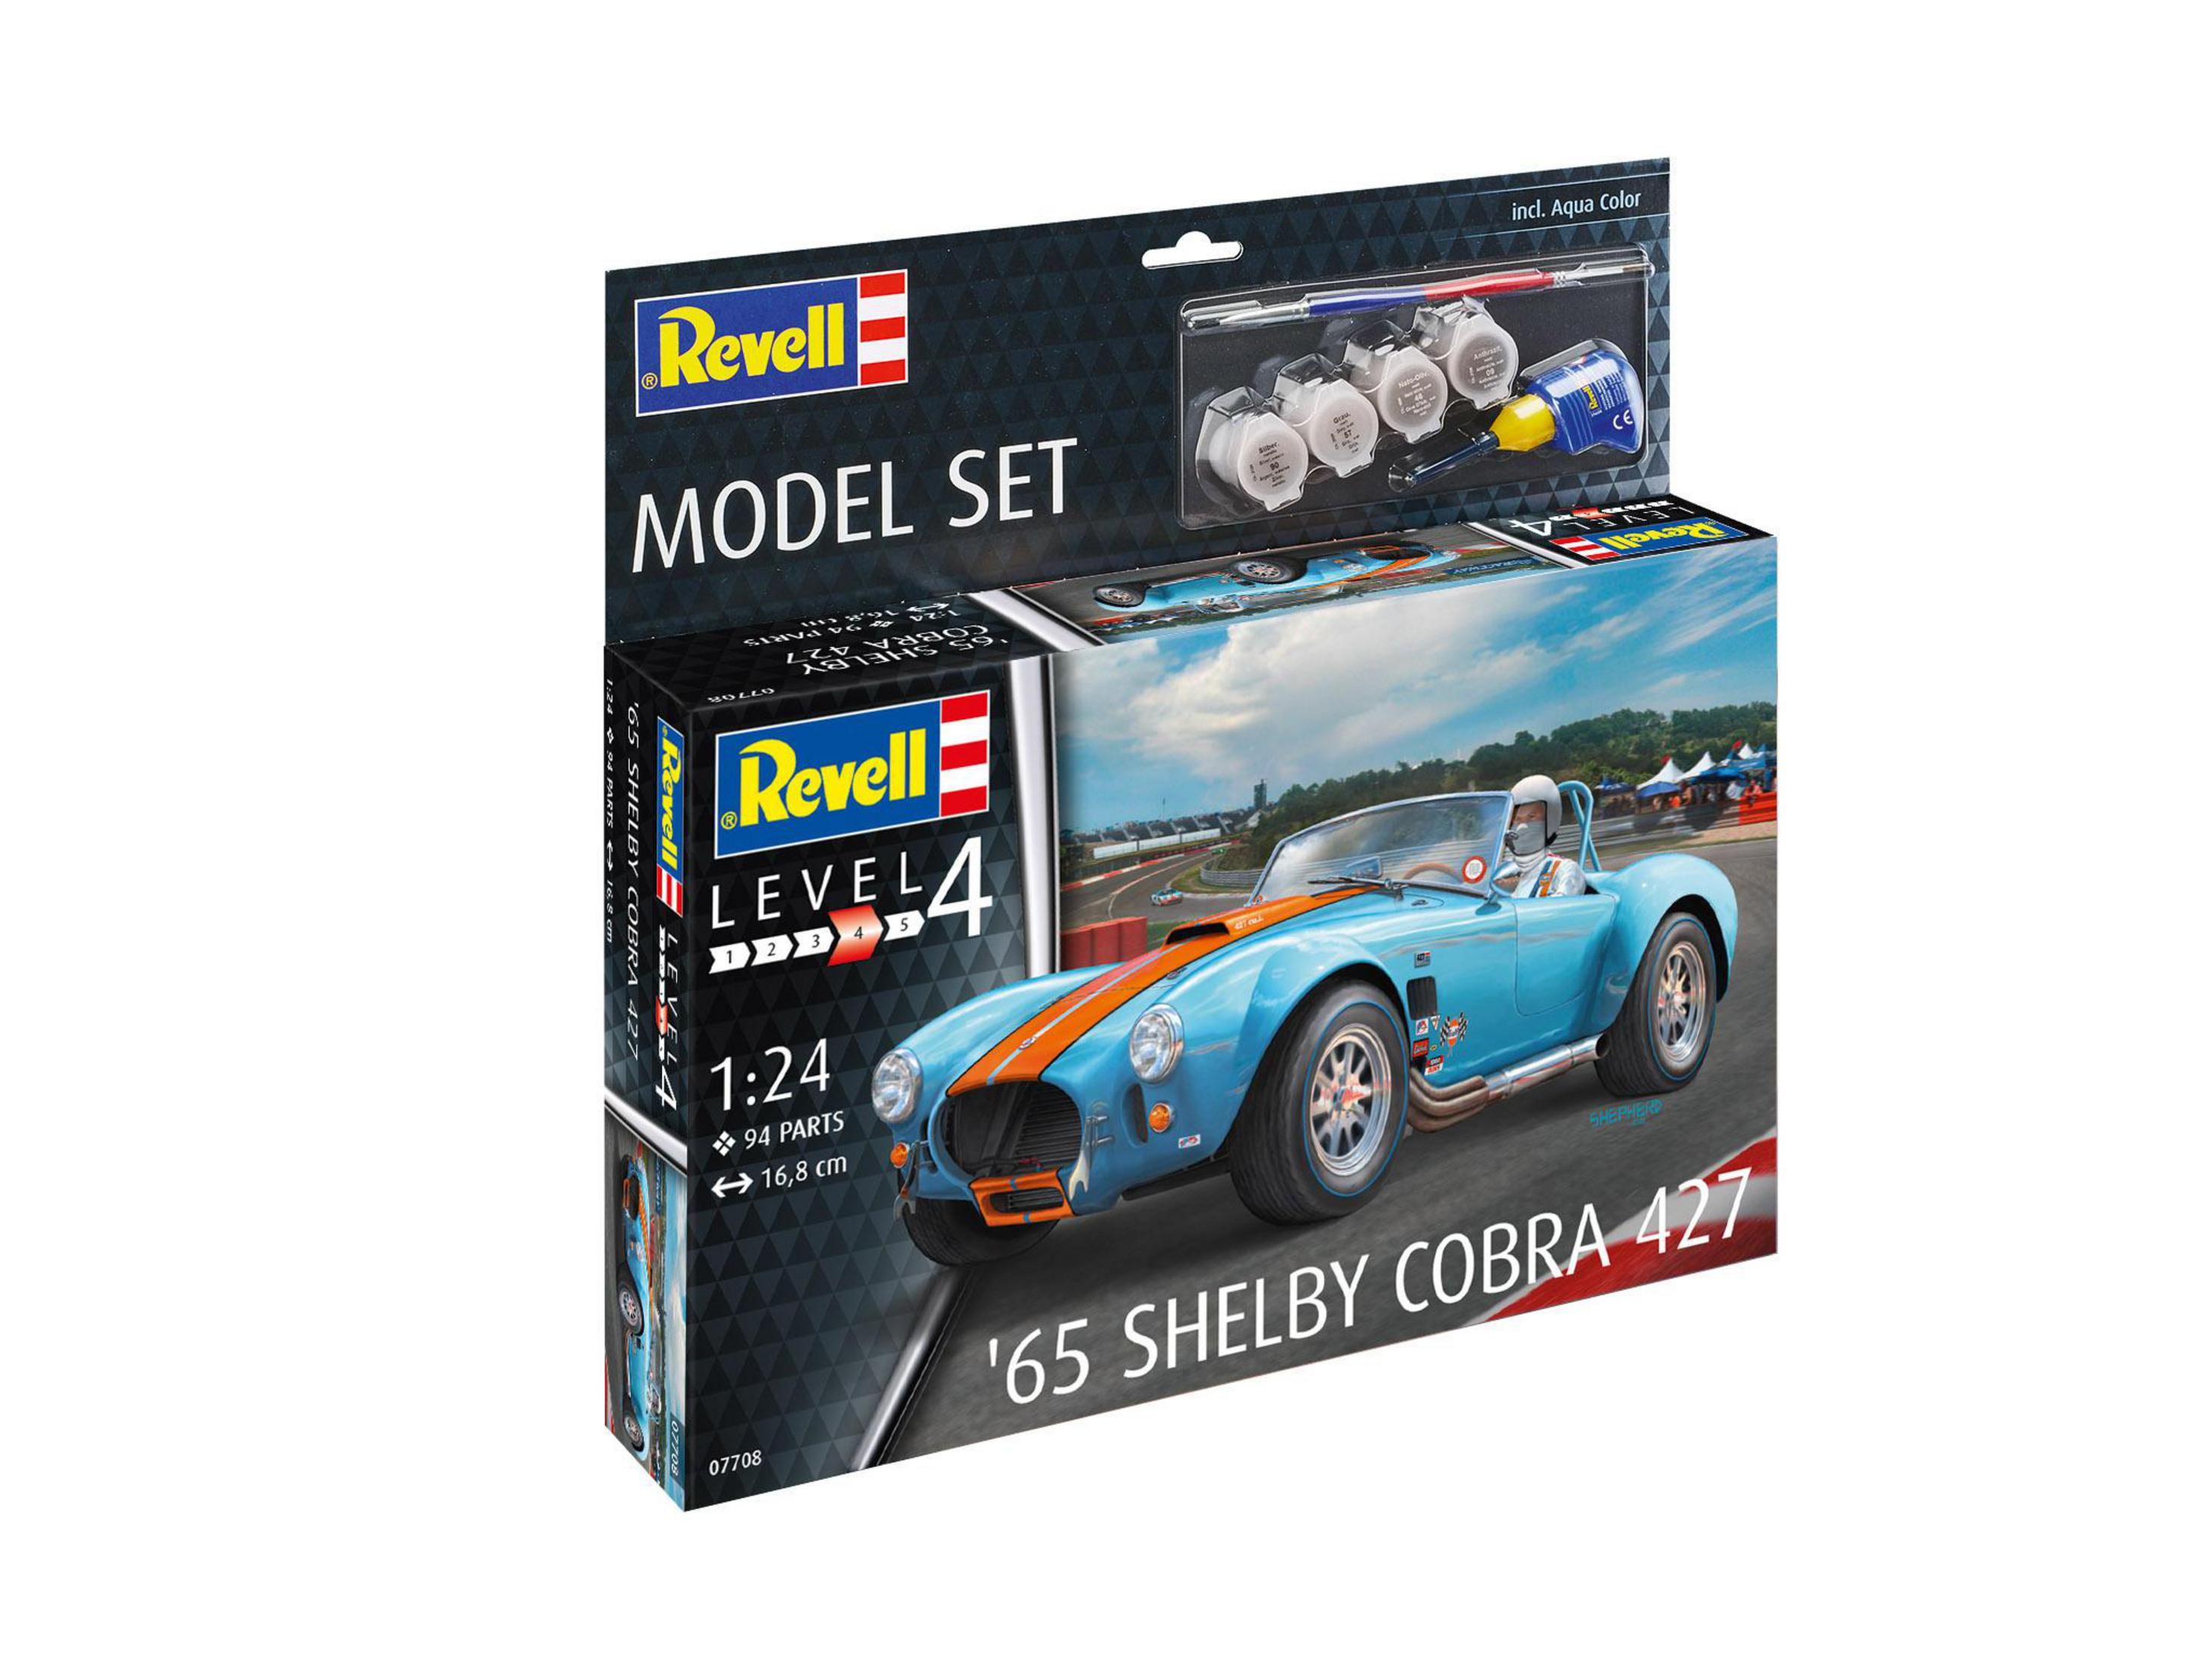 MODEL Modellbausatz, 427 65 Blau/Rot REVELL SHELBY COBRA 67708 SET